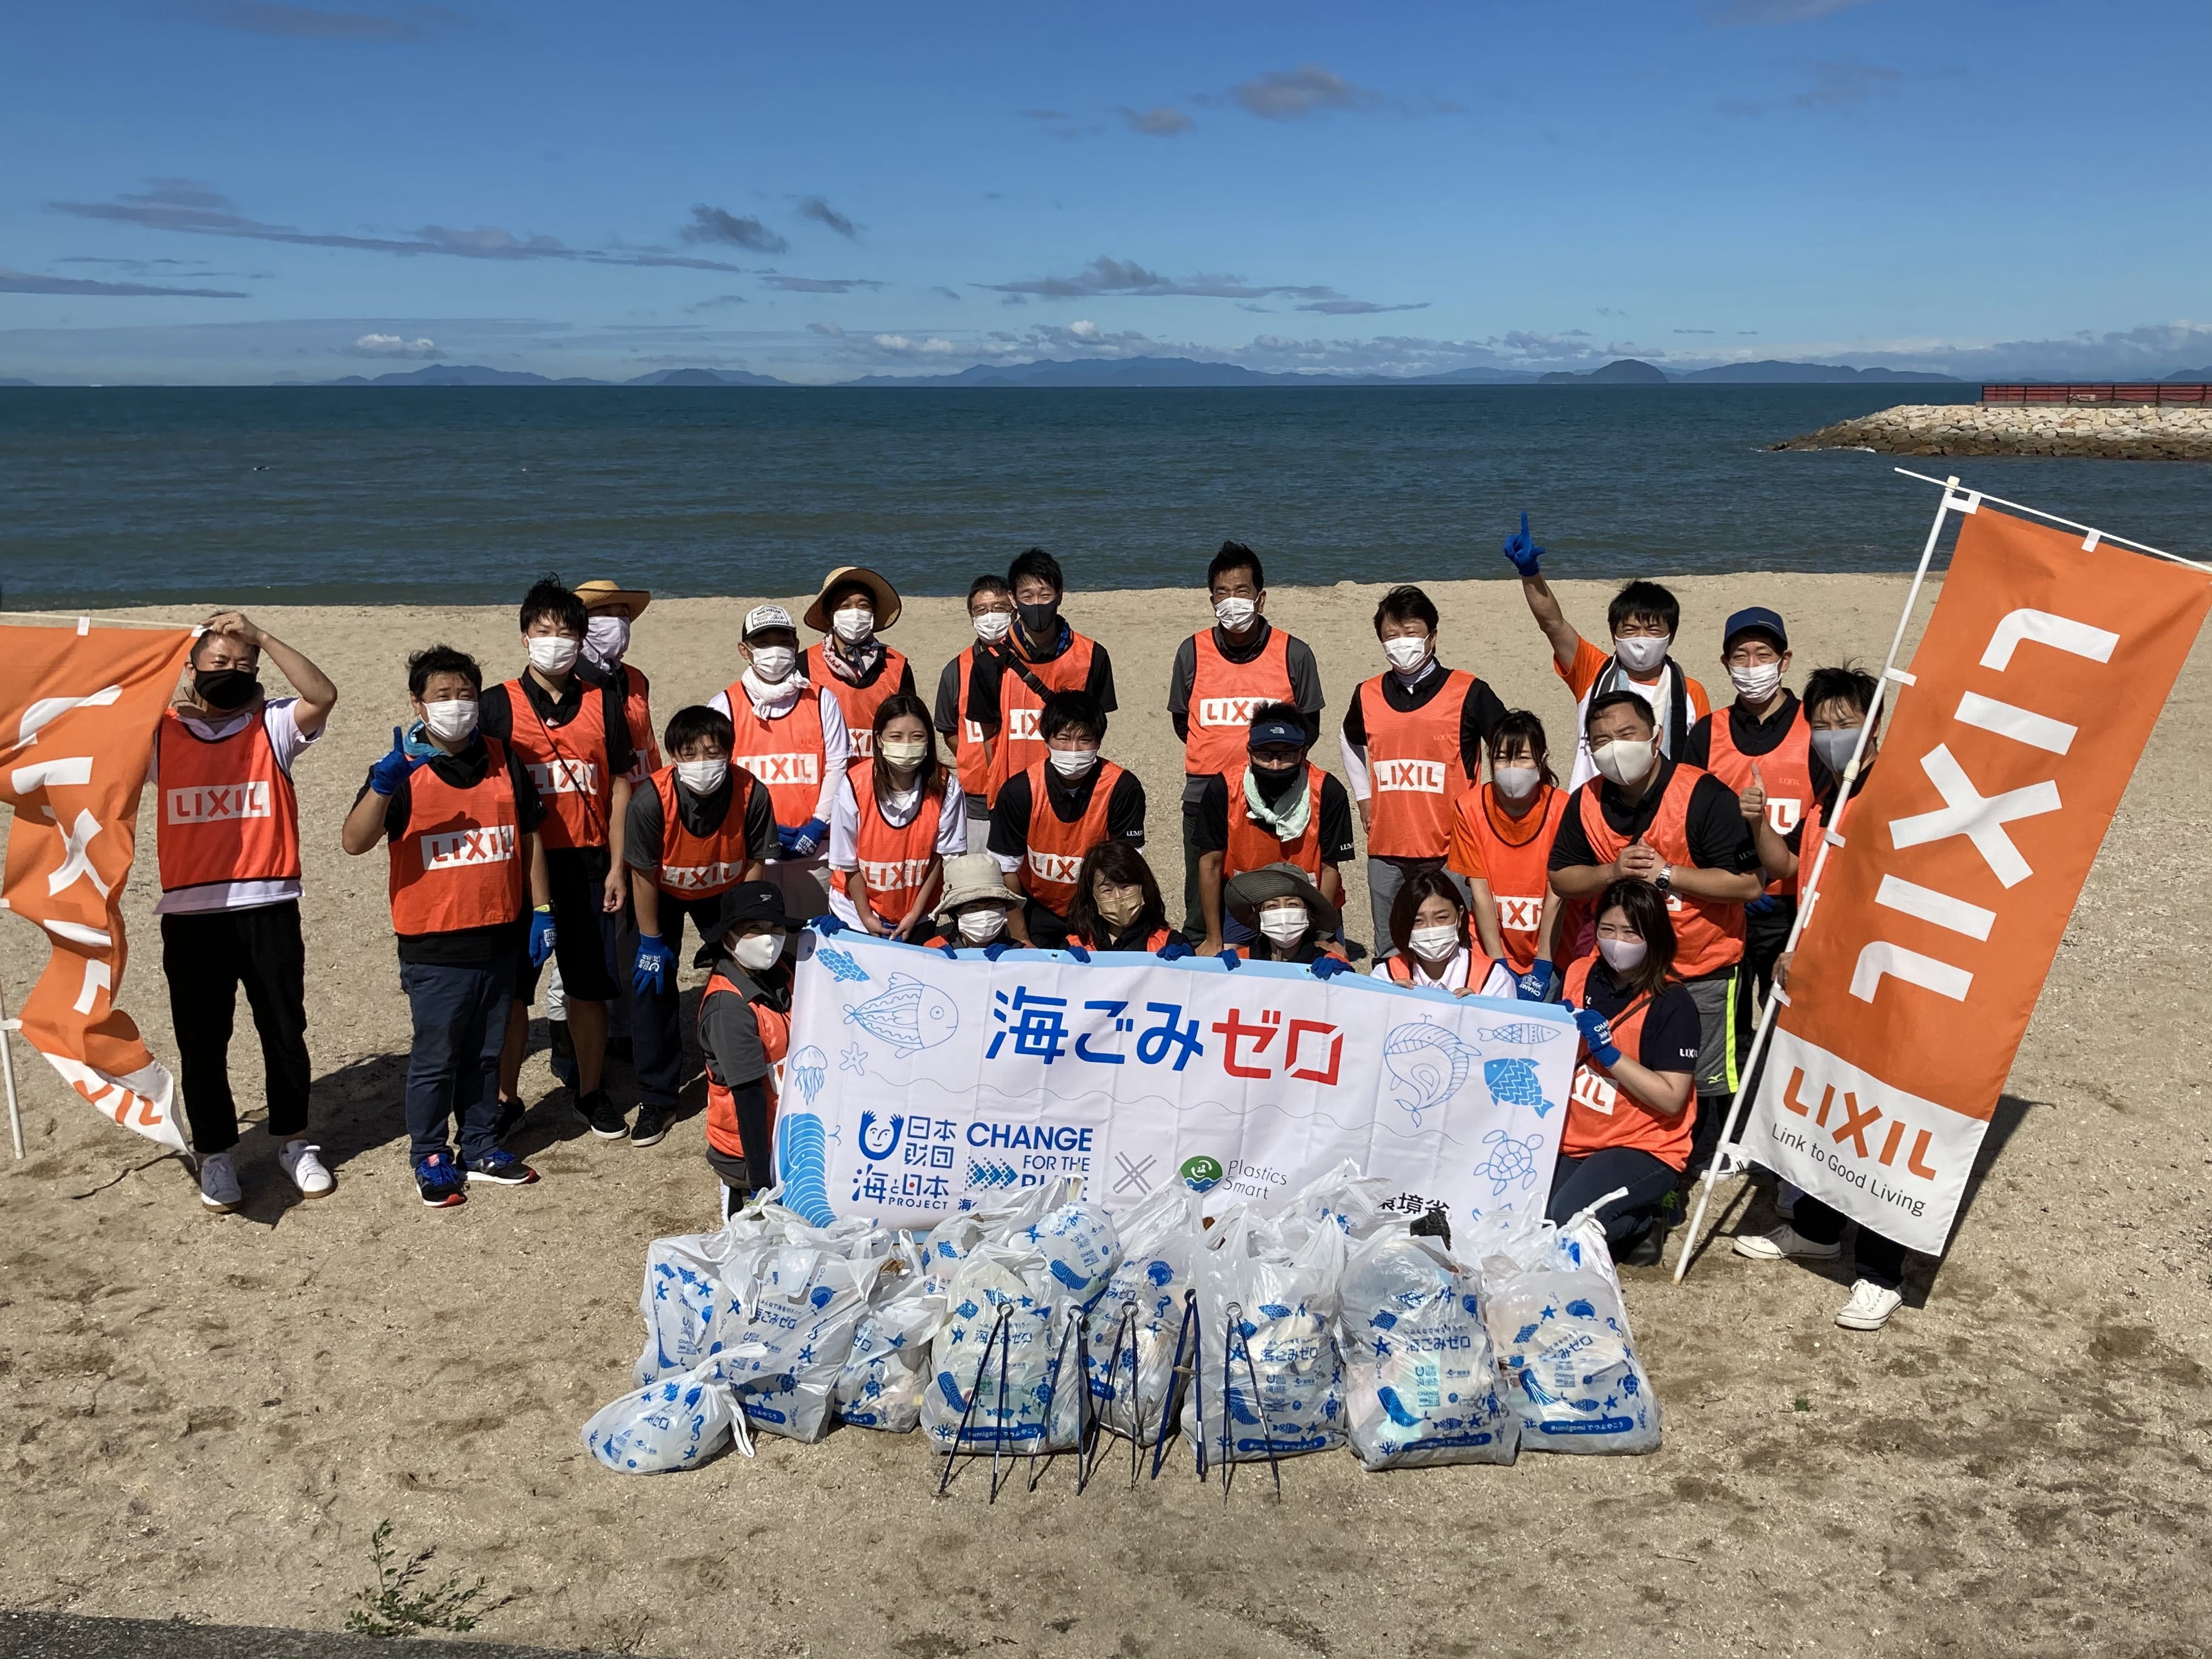 9/18（土）株式会社LIXILが伊予市五色姫海浜公園で海岸清掃を実施しました！